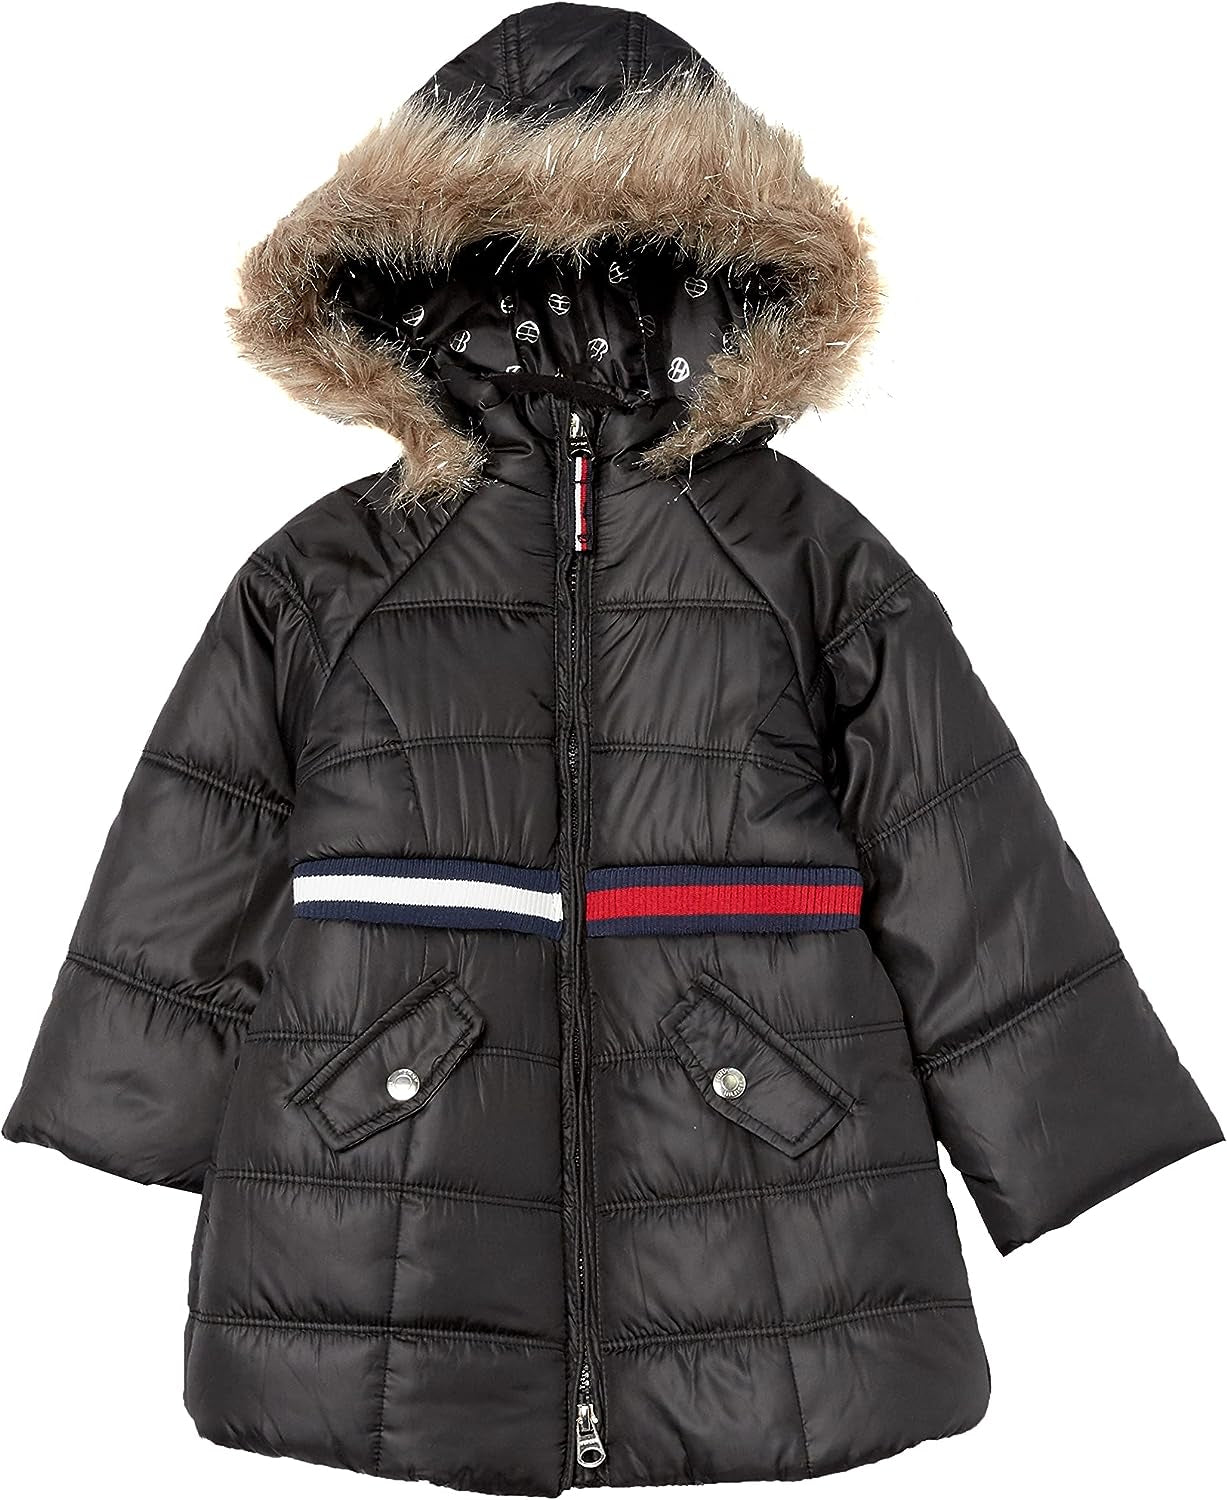 Tommy Hilfiger coat for kids